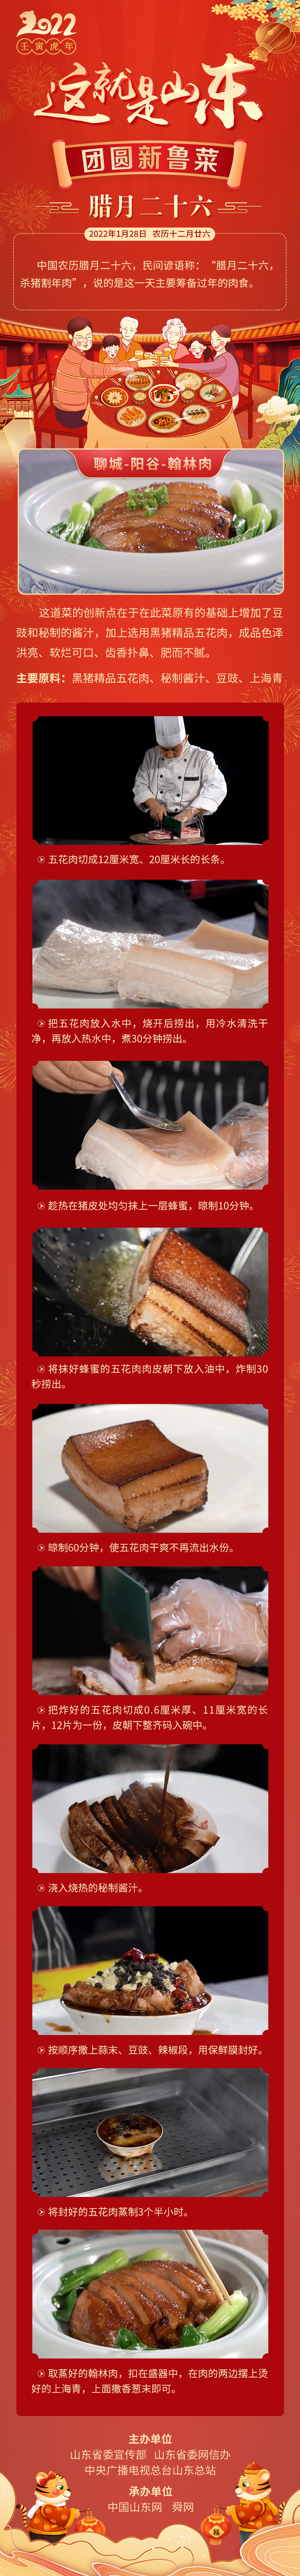 这就是山东·团圆新鲁菜——聊城-阳谷-翰林肉